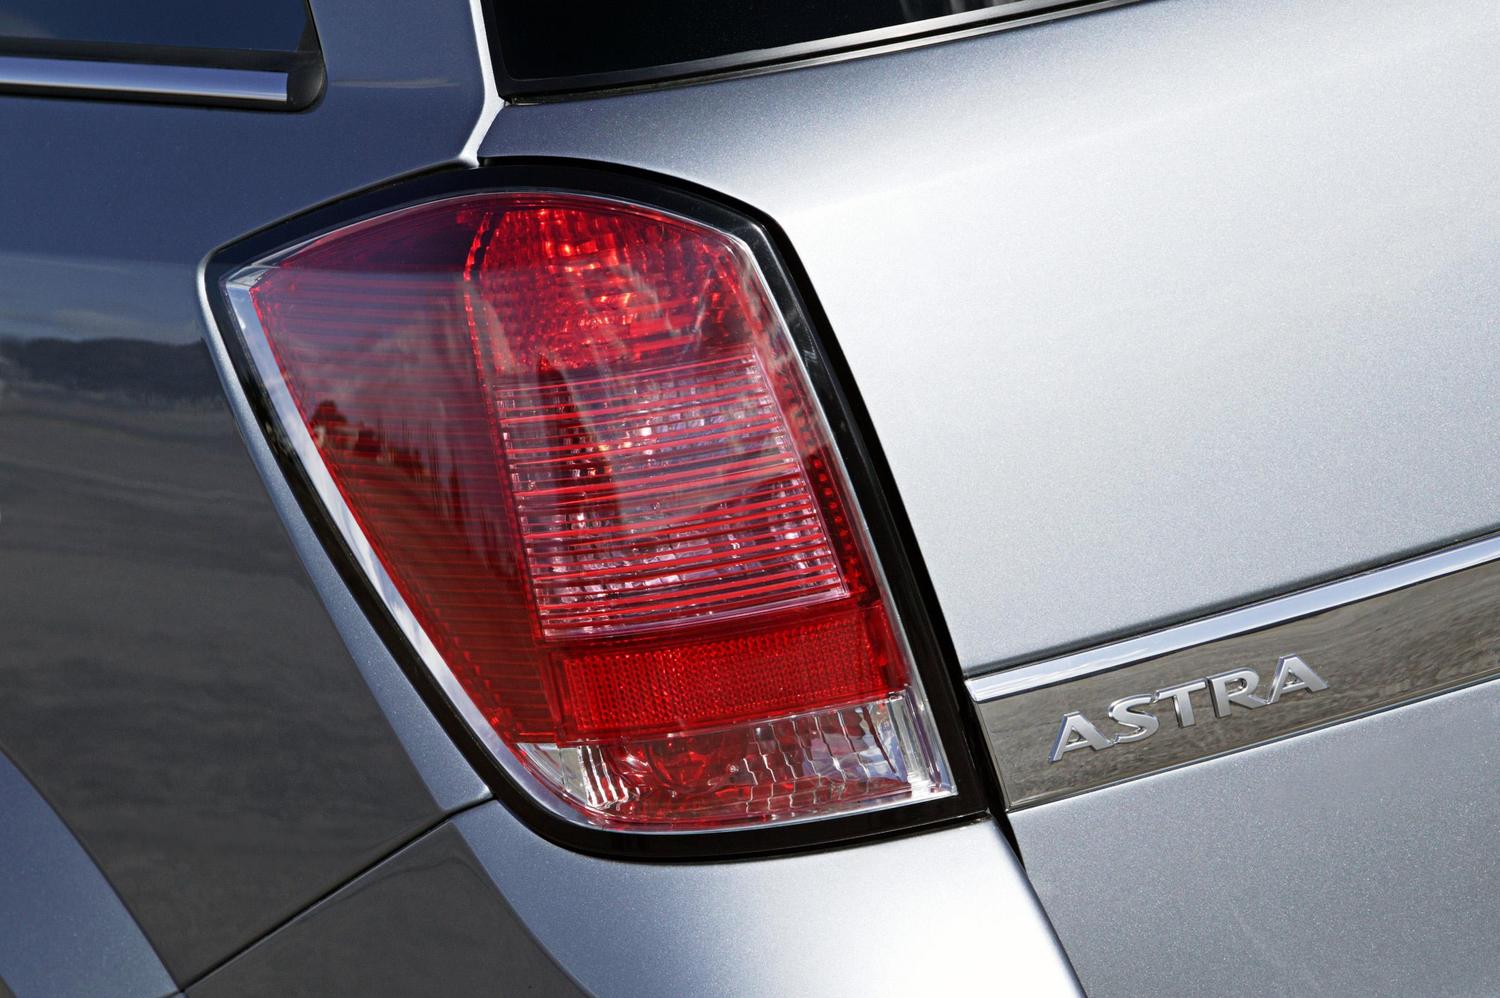 универсал Opel Astra 2004 - 2006г выпуска модификация 1.2 MT (90 л.с.)